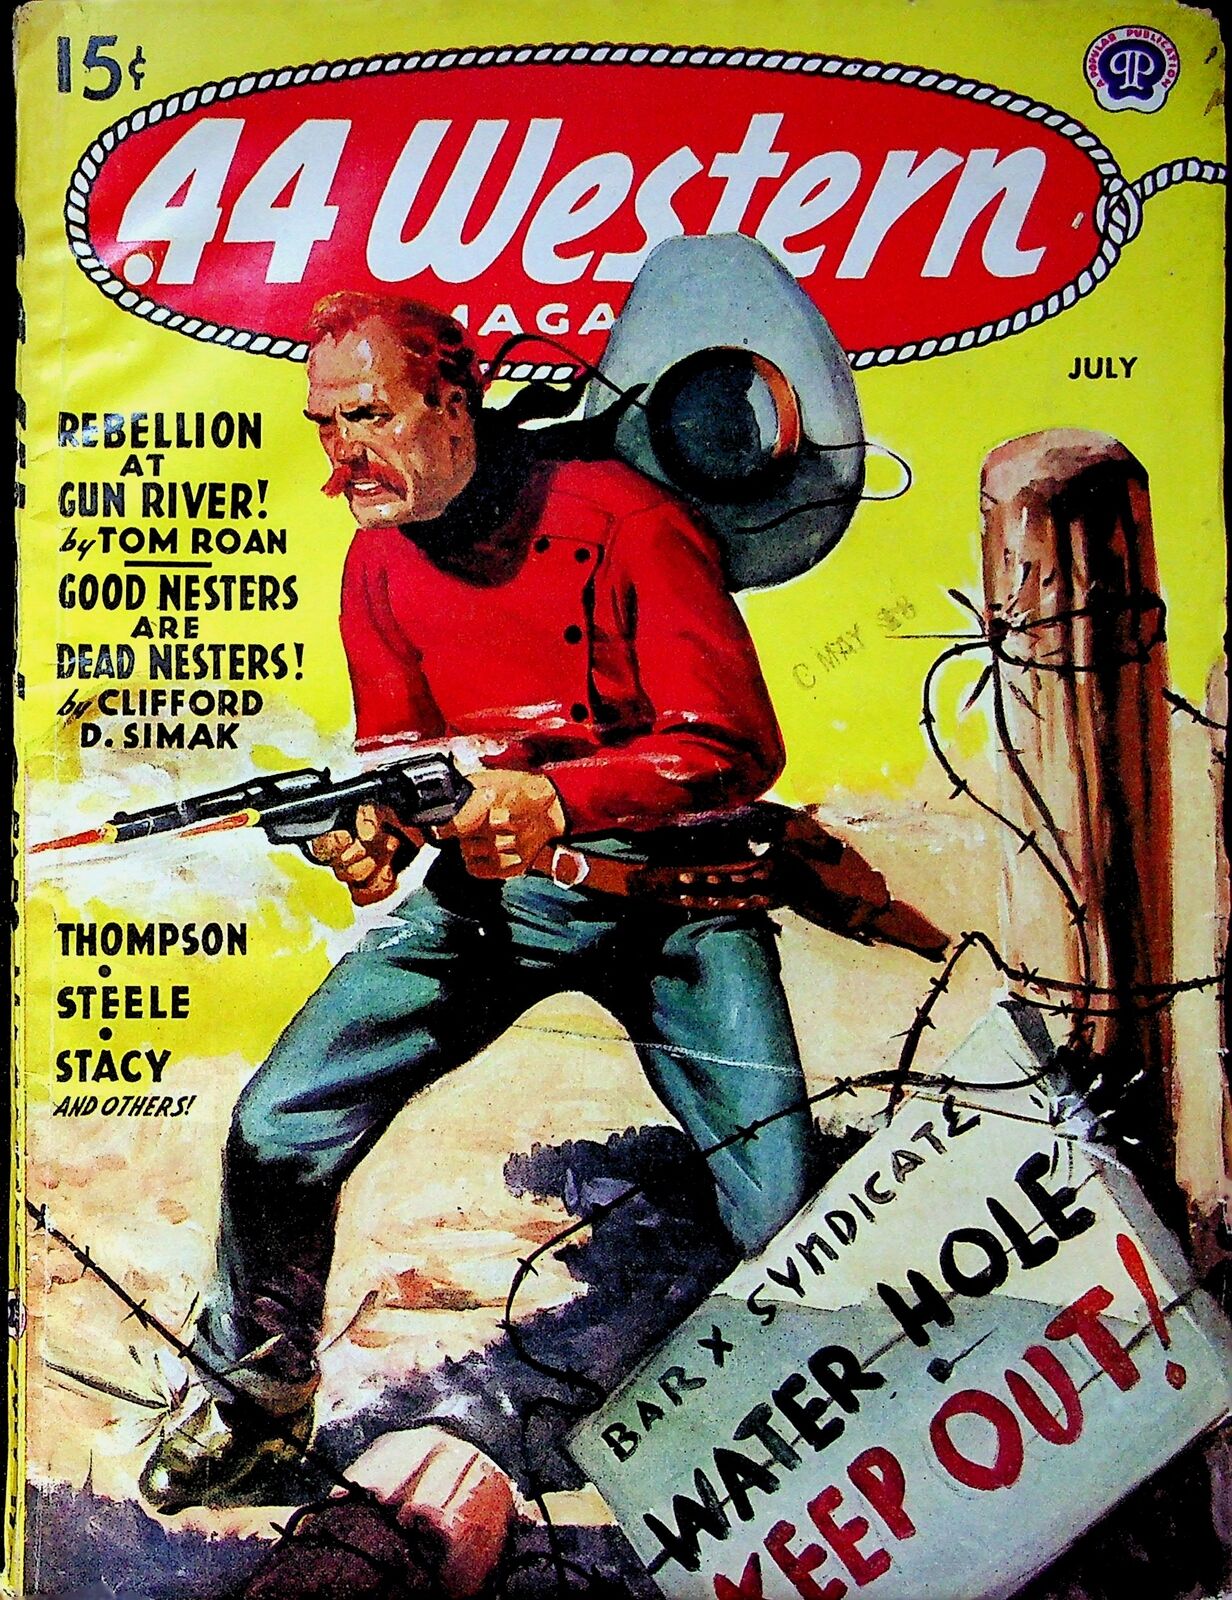 44 Western Magazine Pulp Jul 1945 Vol. 12 #4 VG